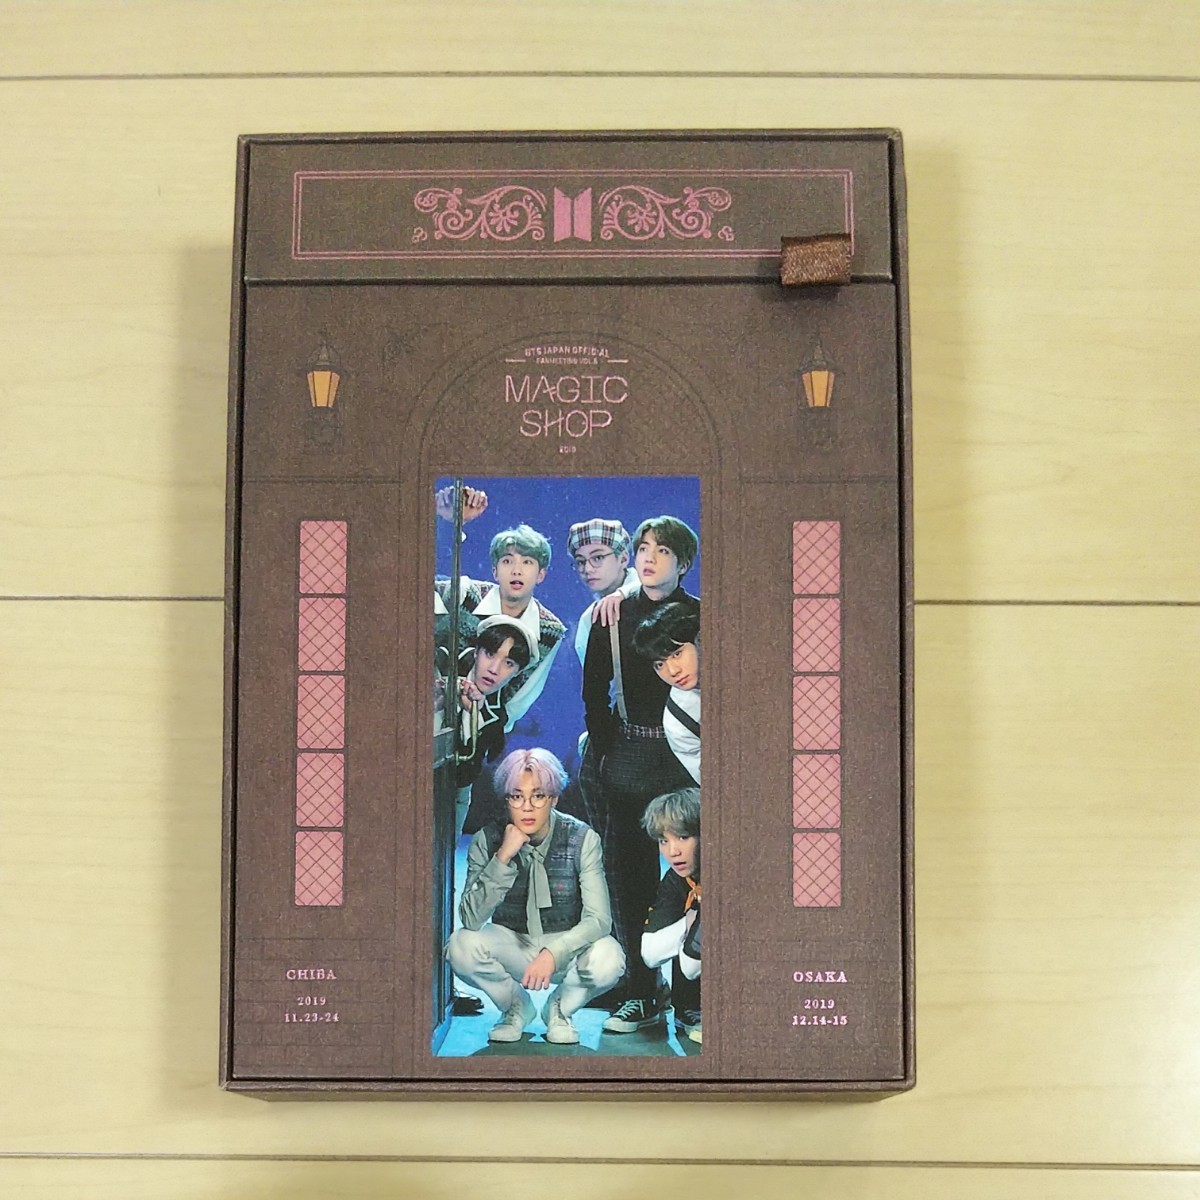 アジア BTS MAGIC SHOP DVD 日本語字幕あり 6f2U9-m93194176852 した